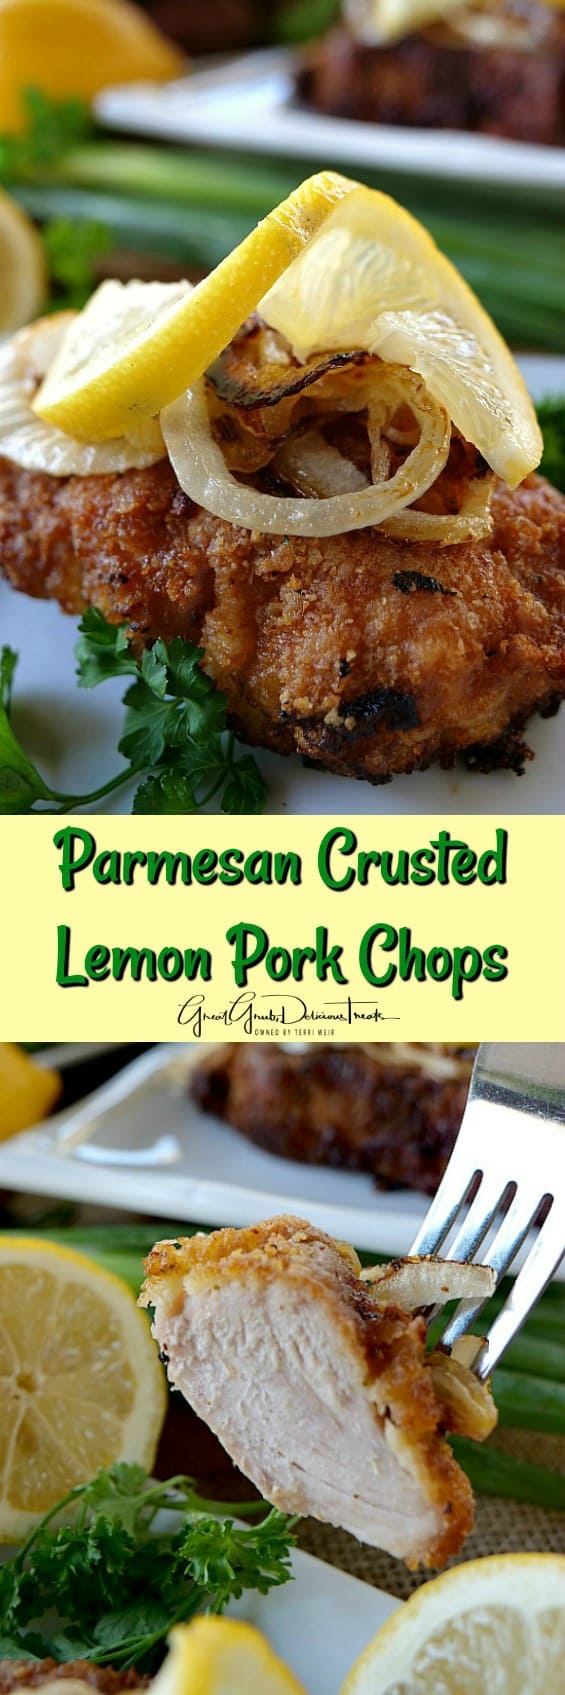 Parmesan Crusted Lemon Pork Chops